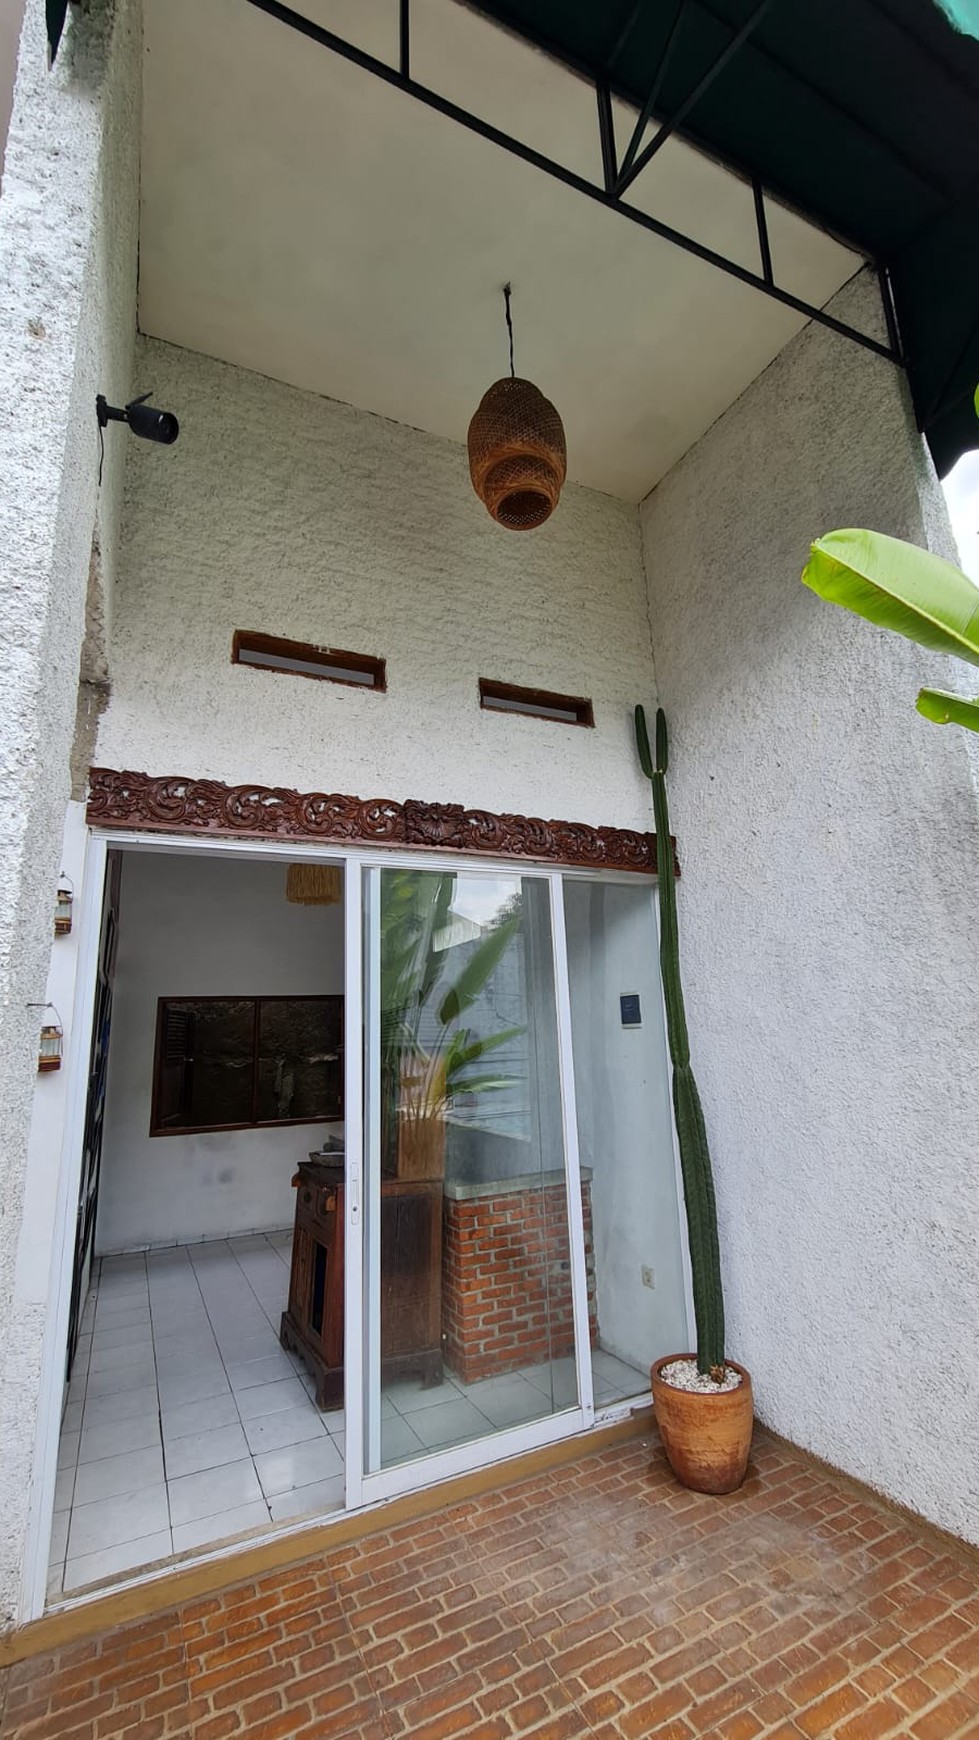 Rumah Bagus Di Jl Arjuna Reni Jaya Baru Pamulang Tangerang Selatan